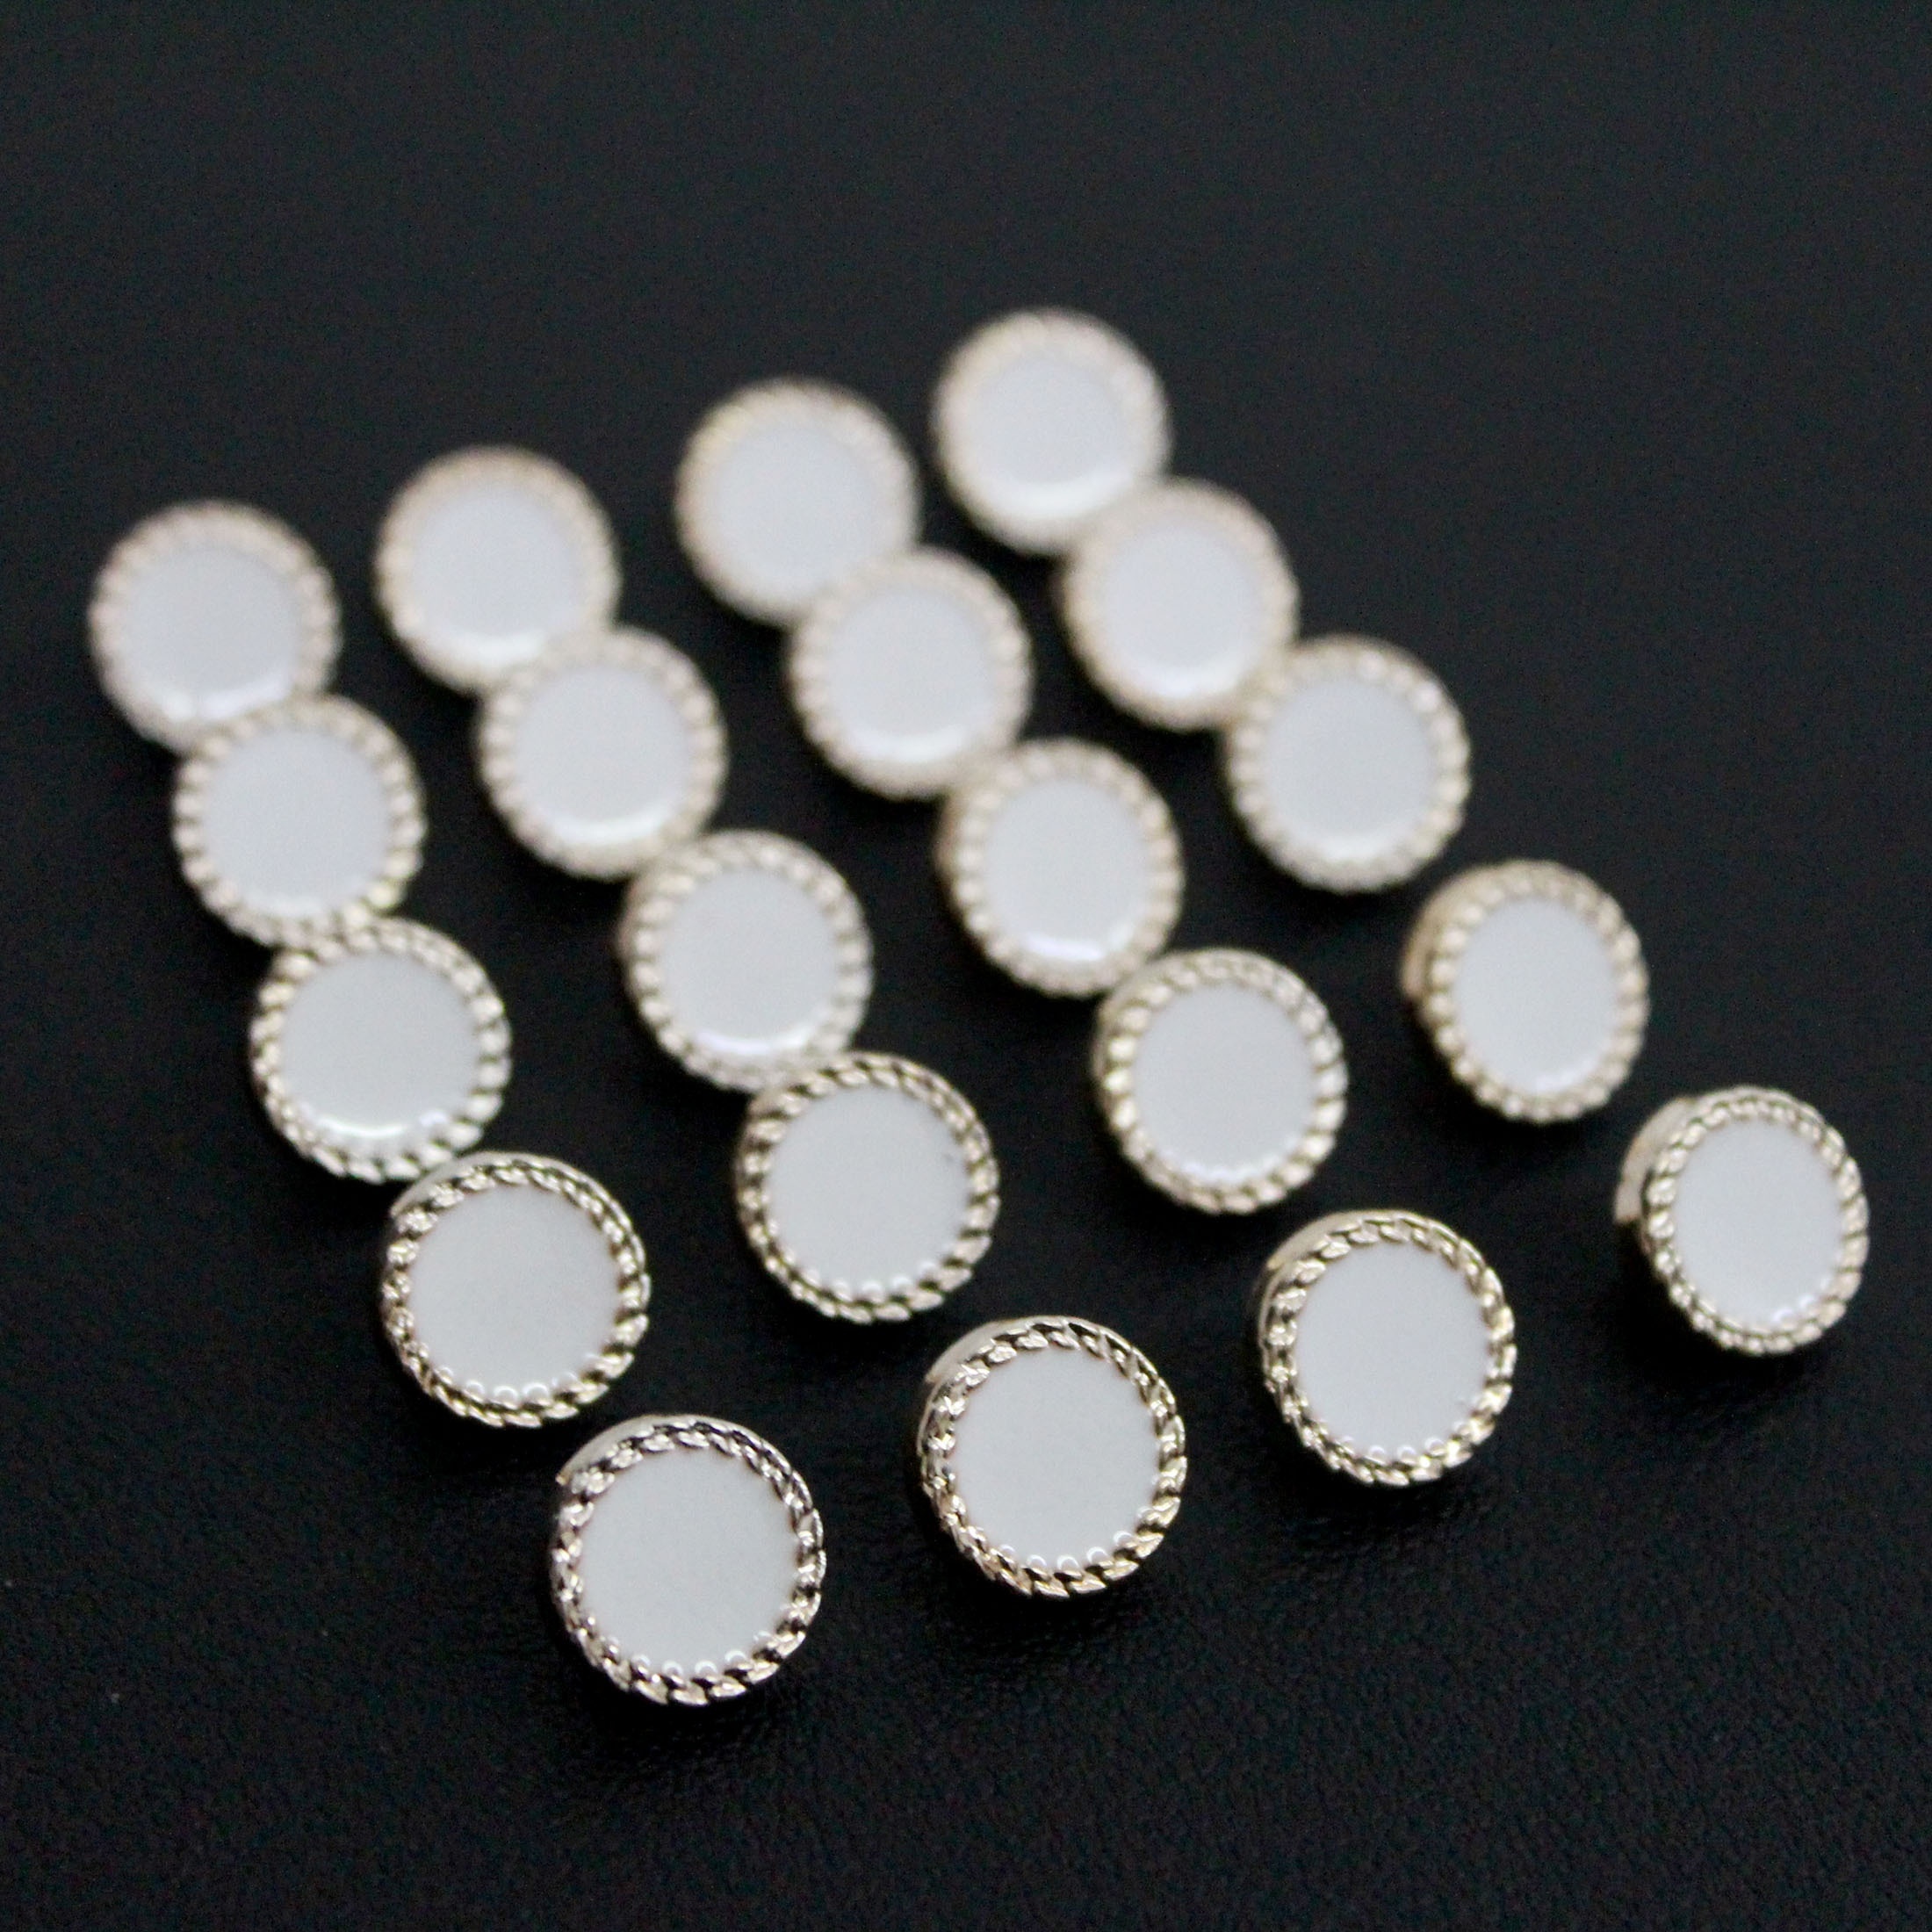 Metal Sew Irregular Buttons Gold Silver Color Dress Pants Button Decors Diy  5pcs